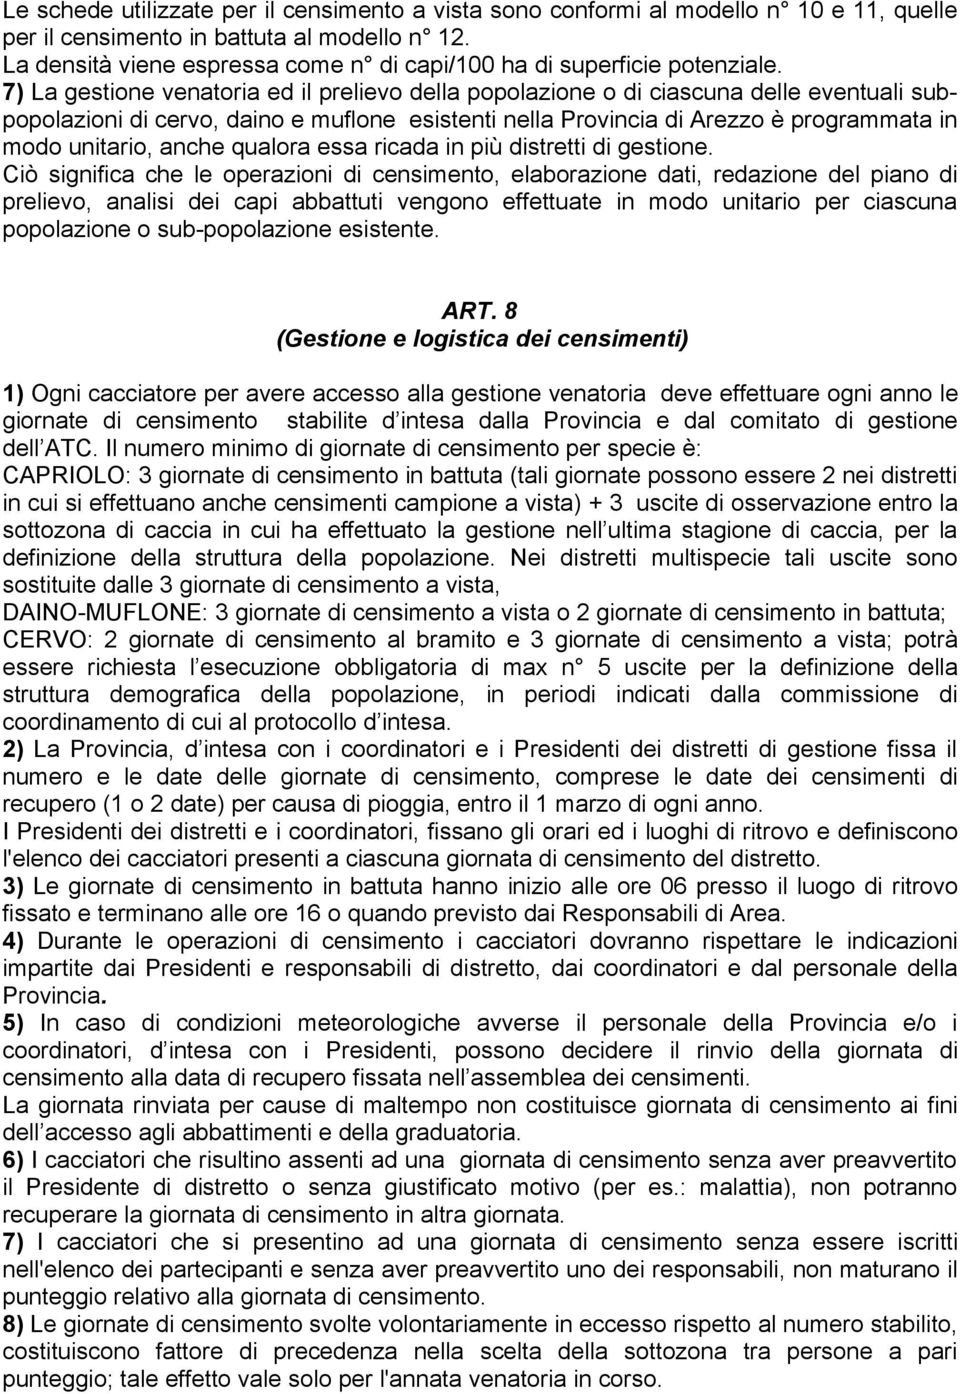 7) La gestione venatoria ed il prelievo della popolazione o di ciascuna delle eventuali subpopolazioni di cervo, daino e muflone esistenti nella Provincia di Arezzo è programmata in modo unitario,